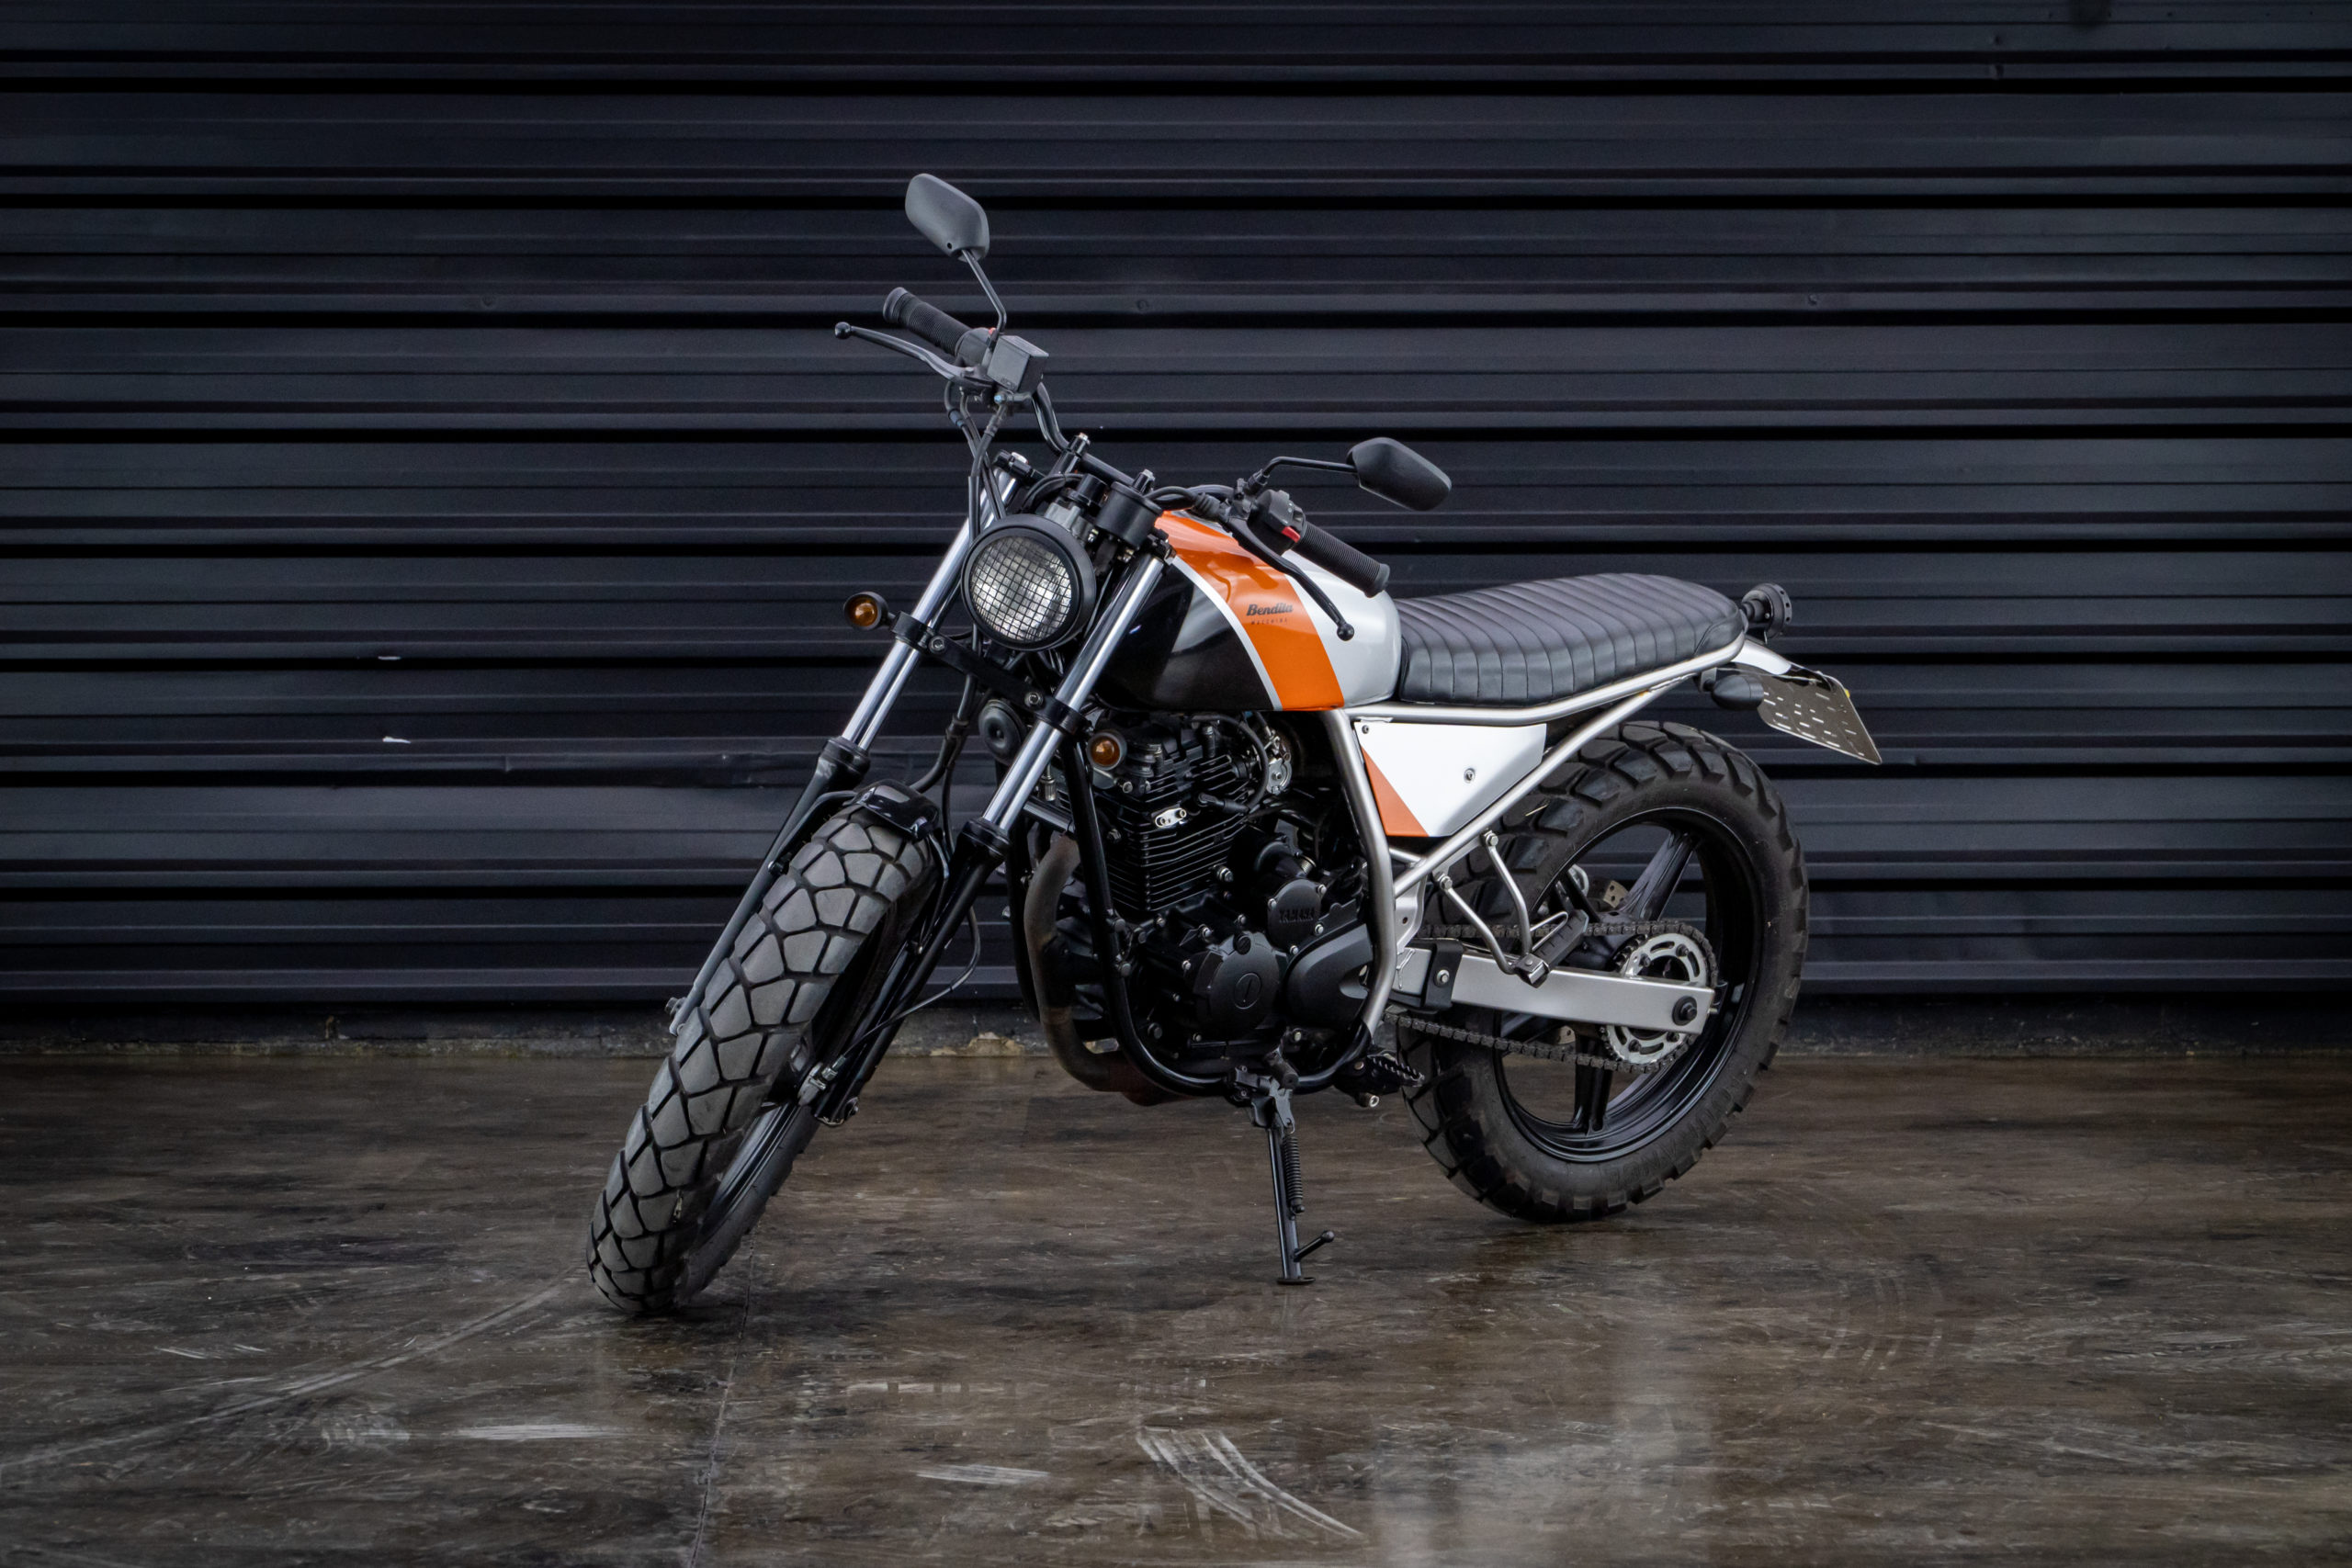 2015-Yamaha-Fazer-250cc-bendita-machina-a-venda-sao-paulo-for-sale-classicos-a-melhor-loja-de-carros-antigos-acervo-de-carros